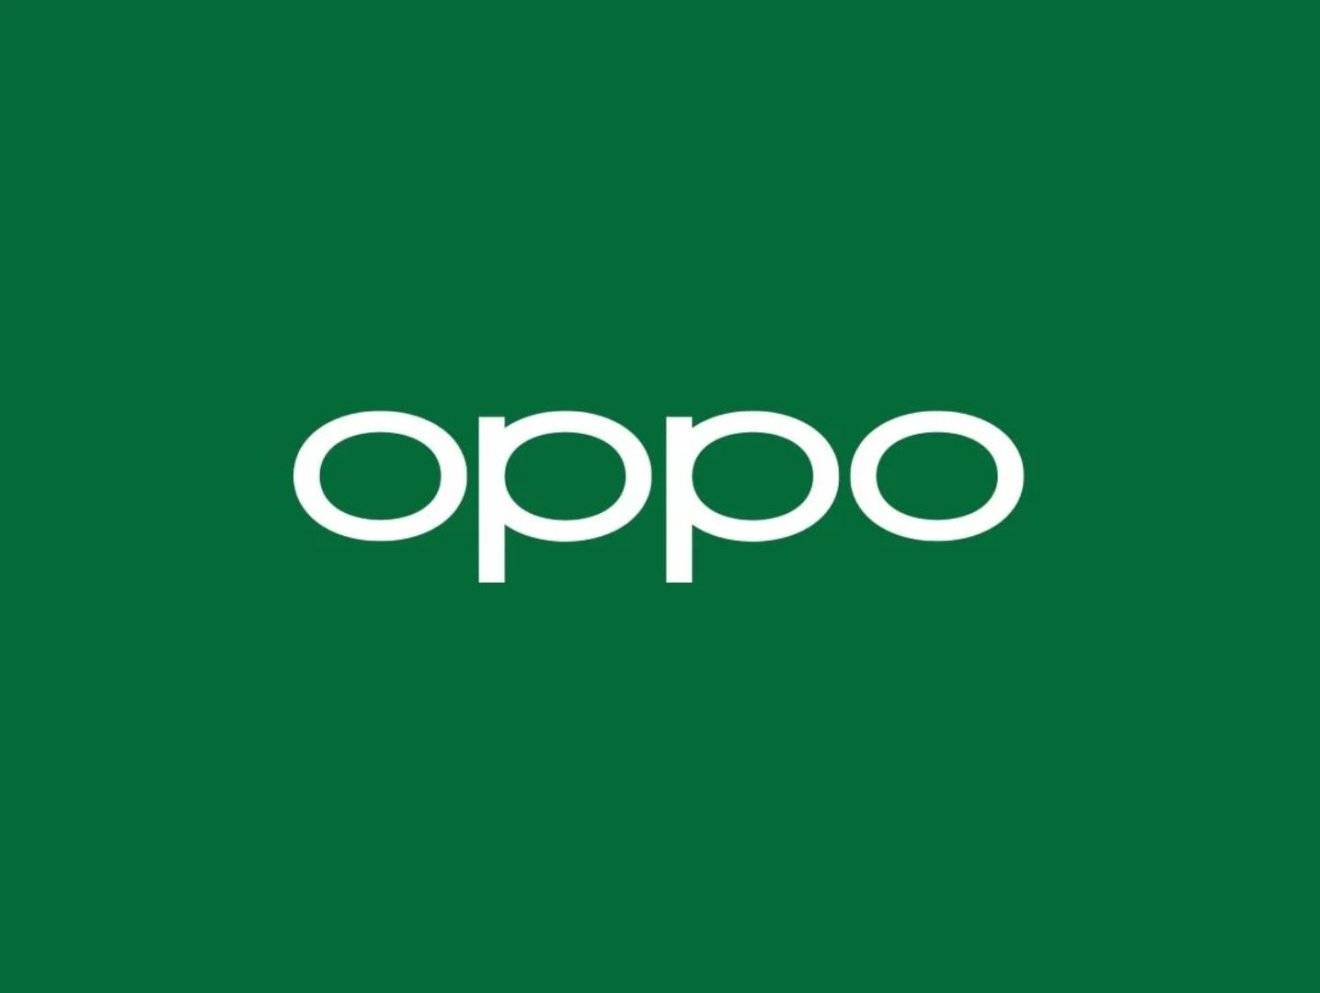 OPPO ชี้แจ้งข้อเท็จจริงประเด็น Nokia ยื่นฟ้อง OPPO ในออสเตรเลีย